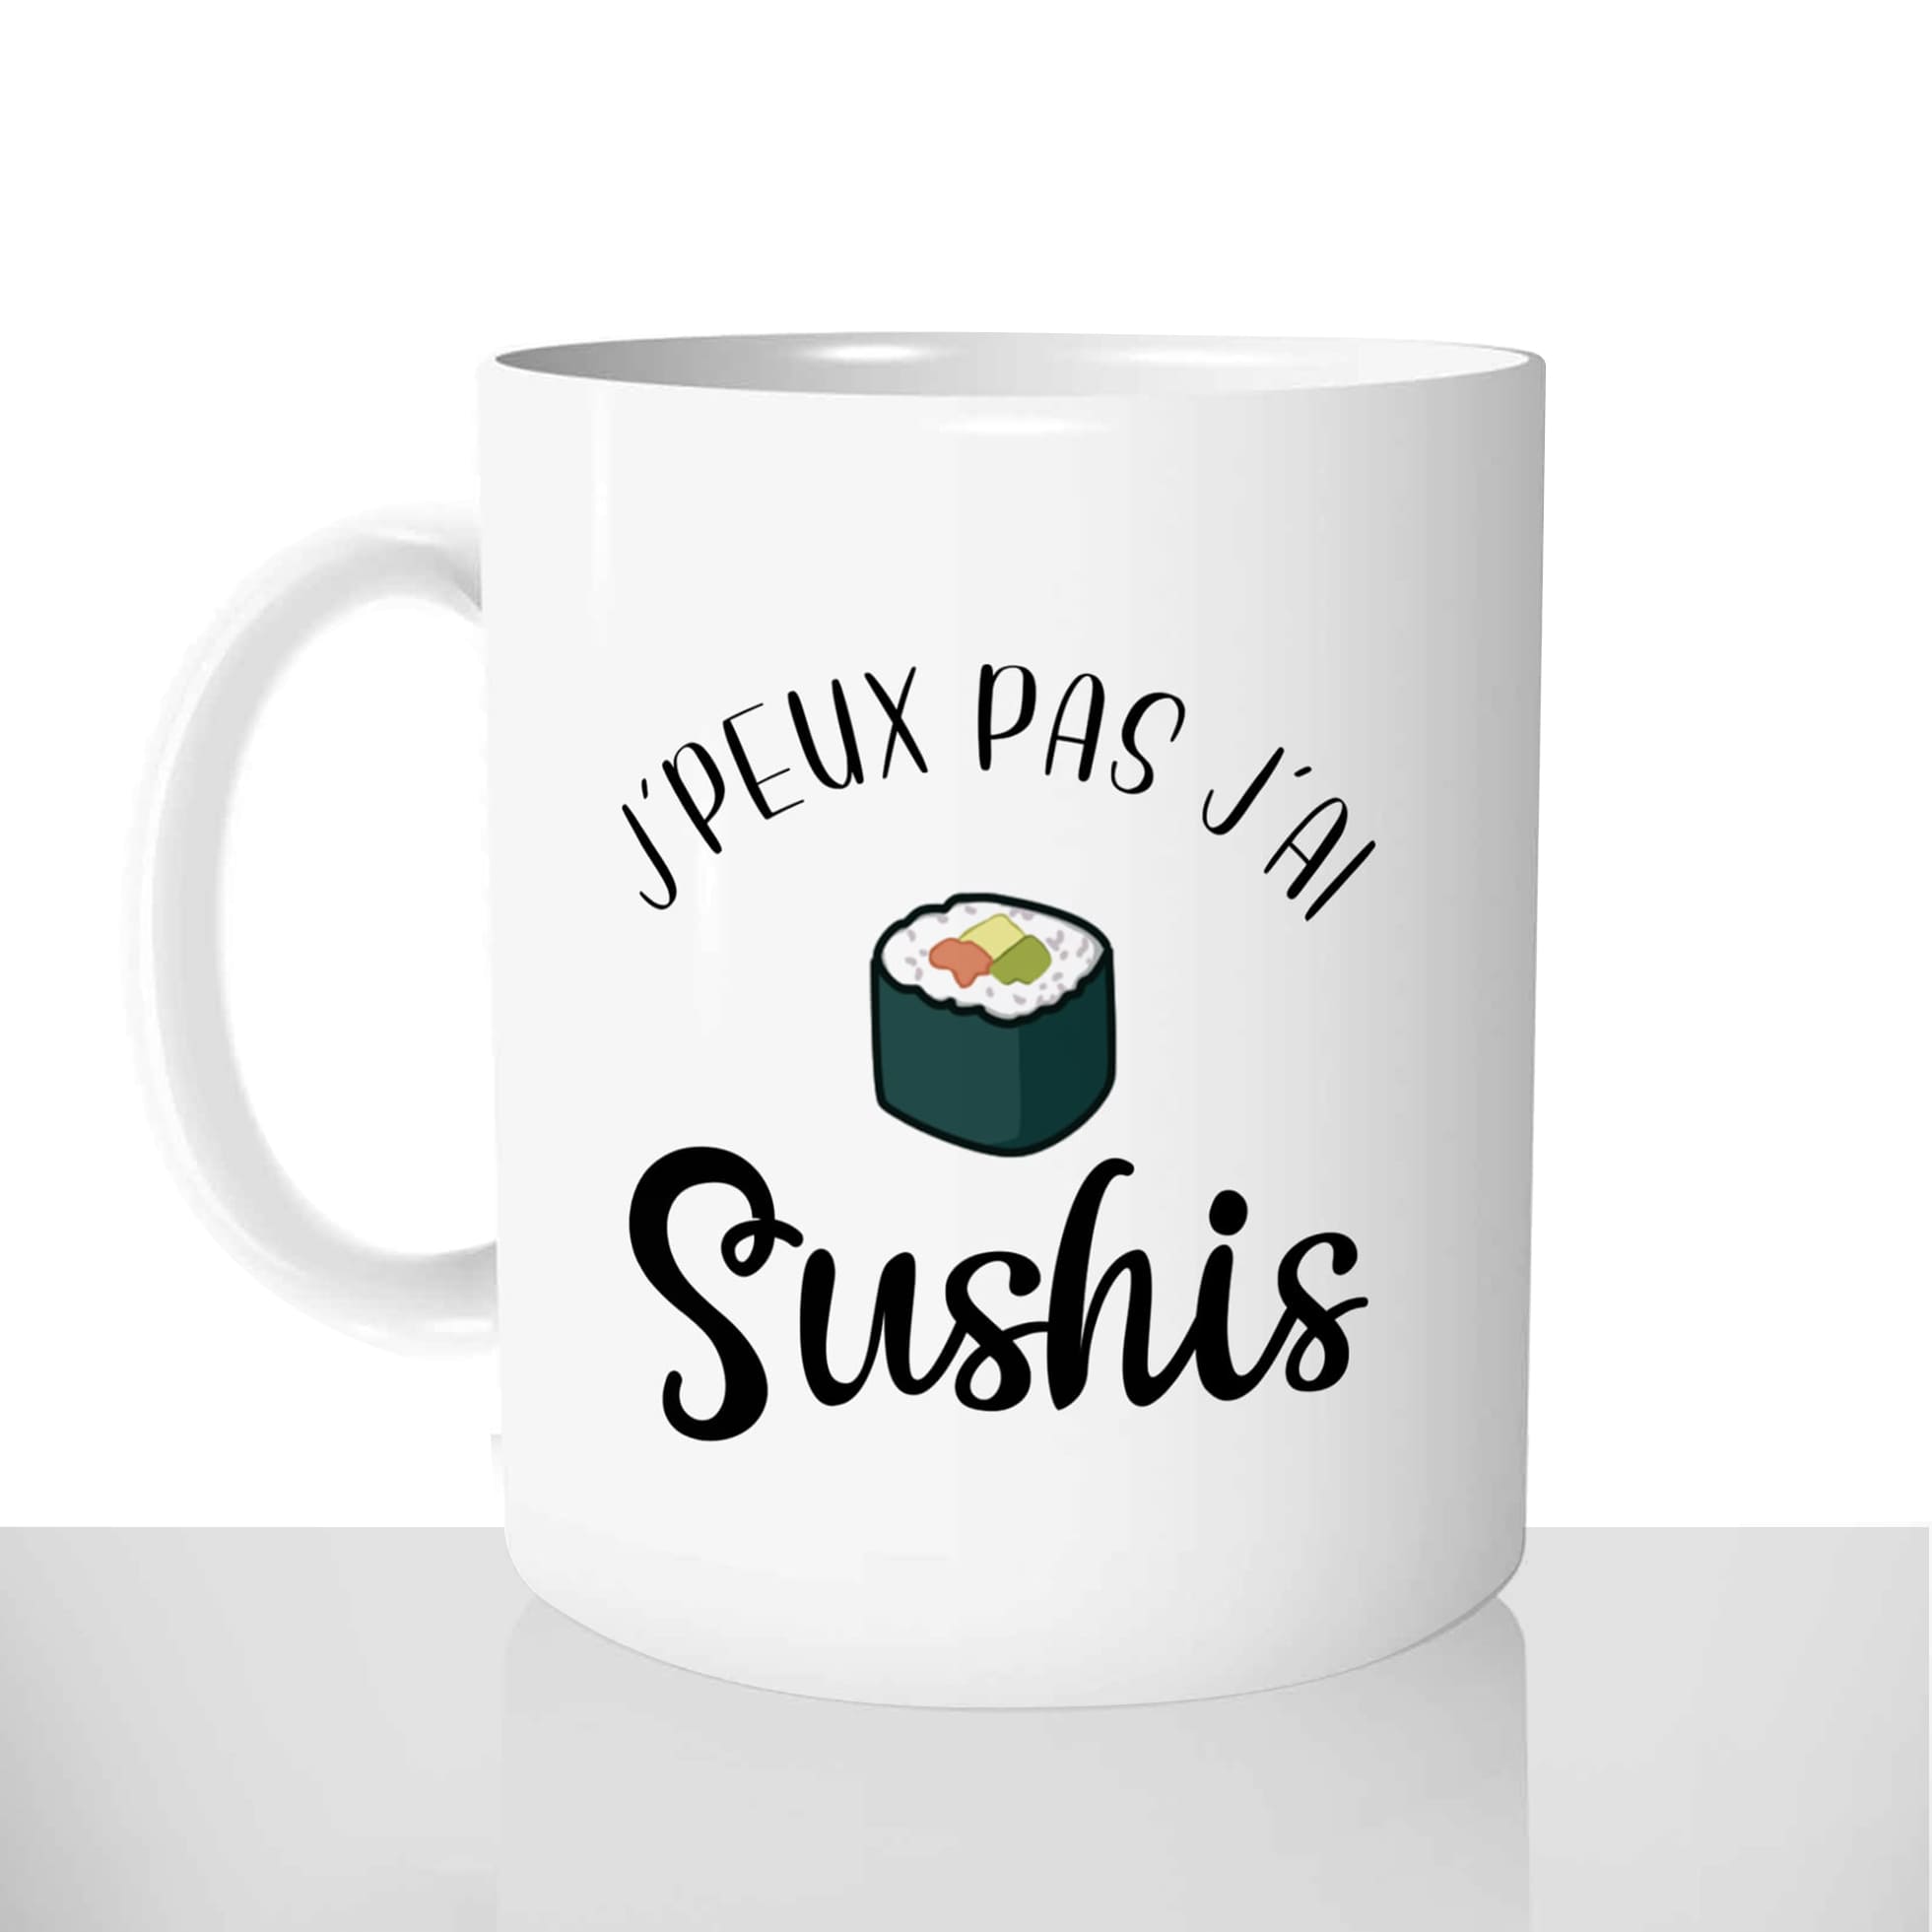 mug classique en céramique 11oz personnalisé personnalisation photo gourmand je peux pas jai sushis chou offrir cadeau